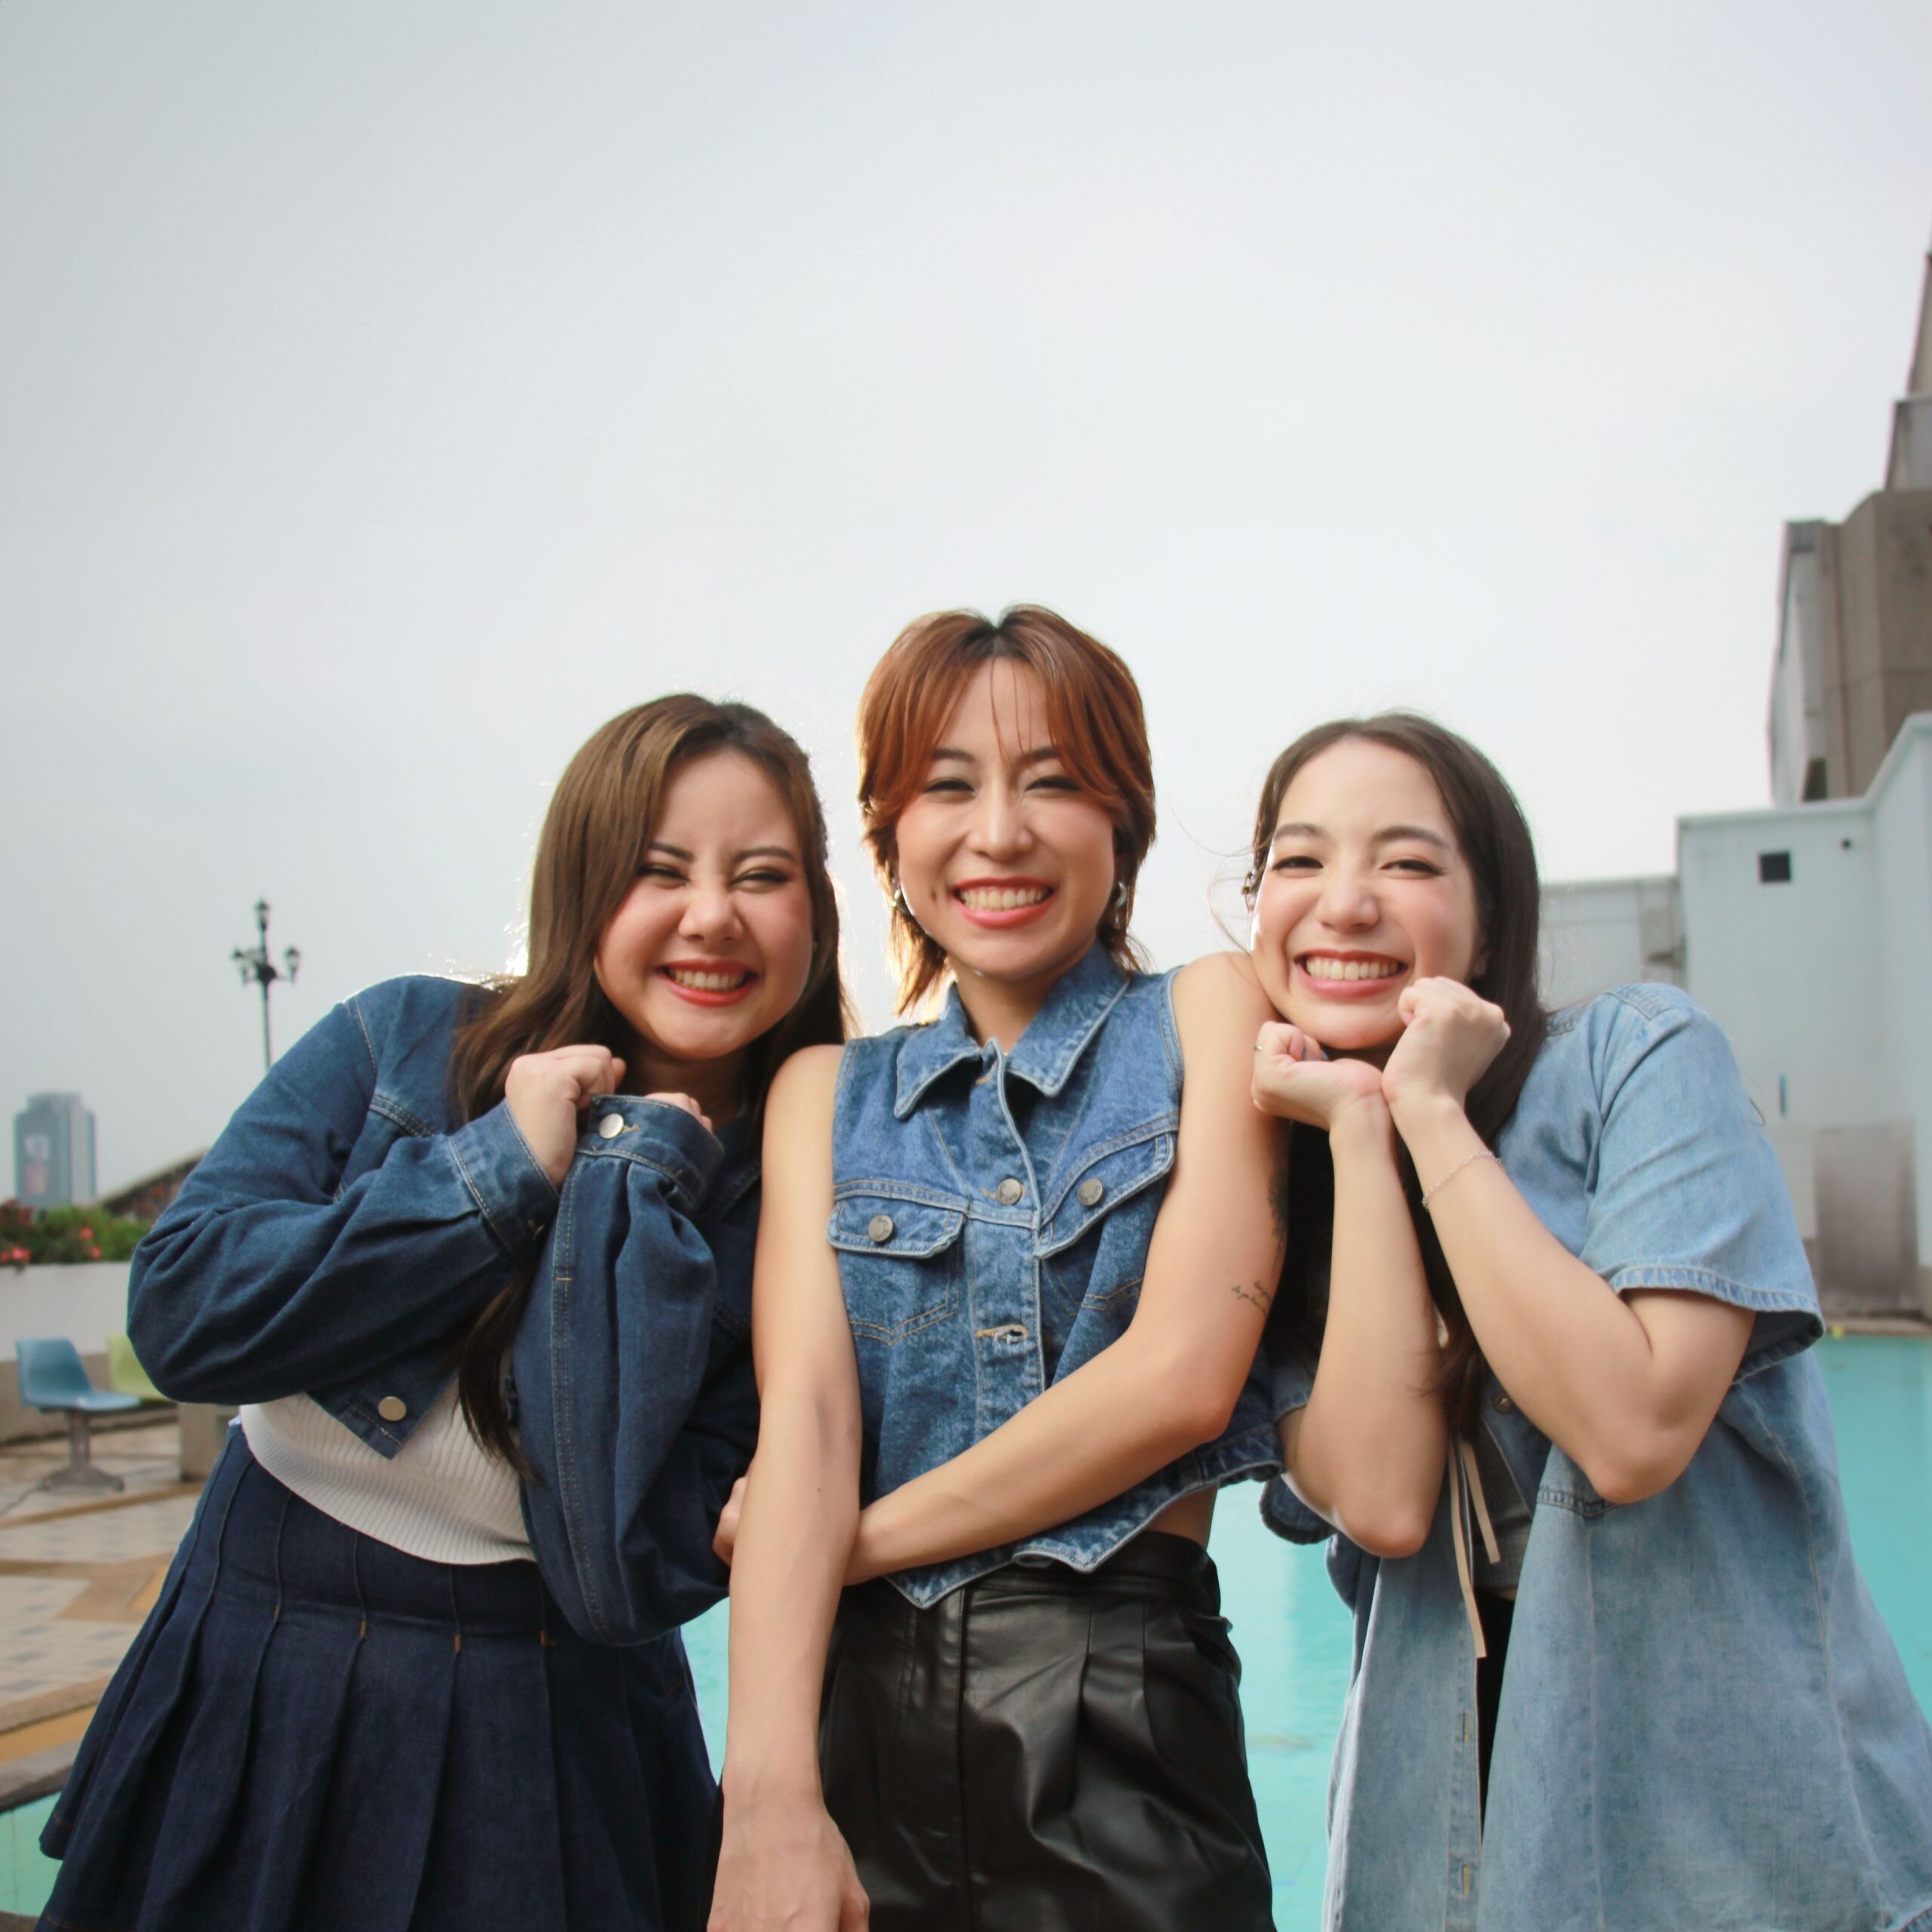 แท็คทีม 3 สาวค่าย M BEAT MUSIC  "Film Filmm - Kanoom - Kikie" ส่งกำลังใจผ่านเพลง "ชาร์จหัวใจ (Ur Power Bank)" ให้แฟนๆ ส่งท้ายปี